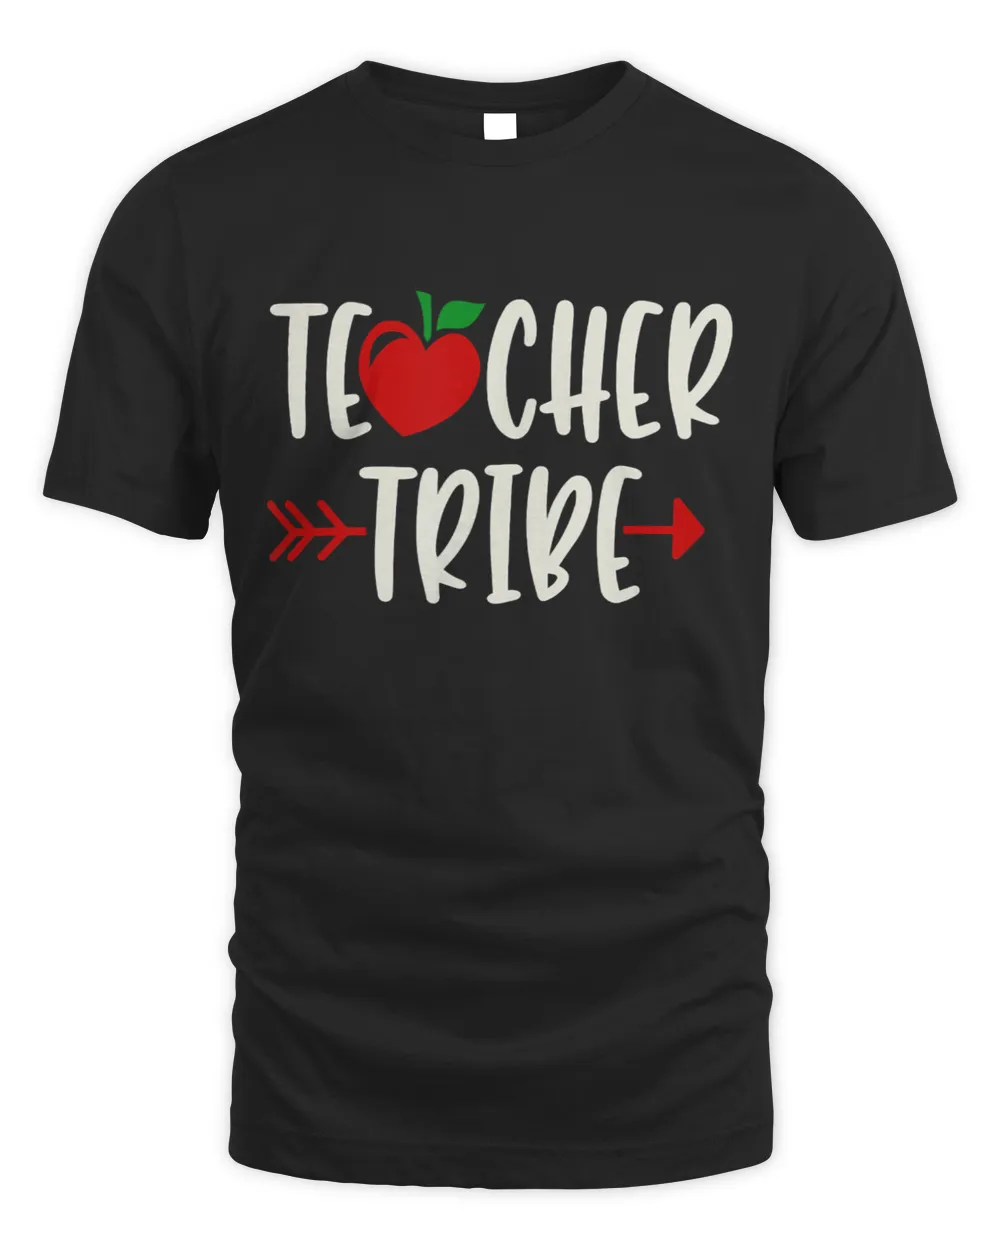 Teacher Tribe T-Shirt